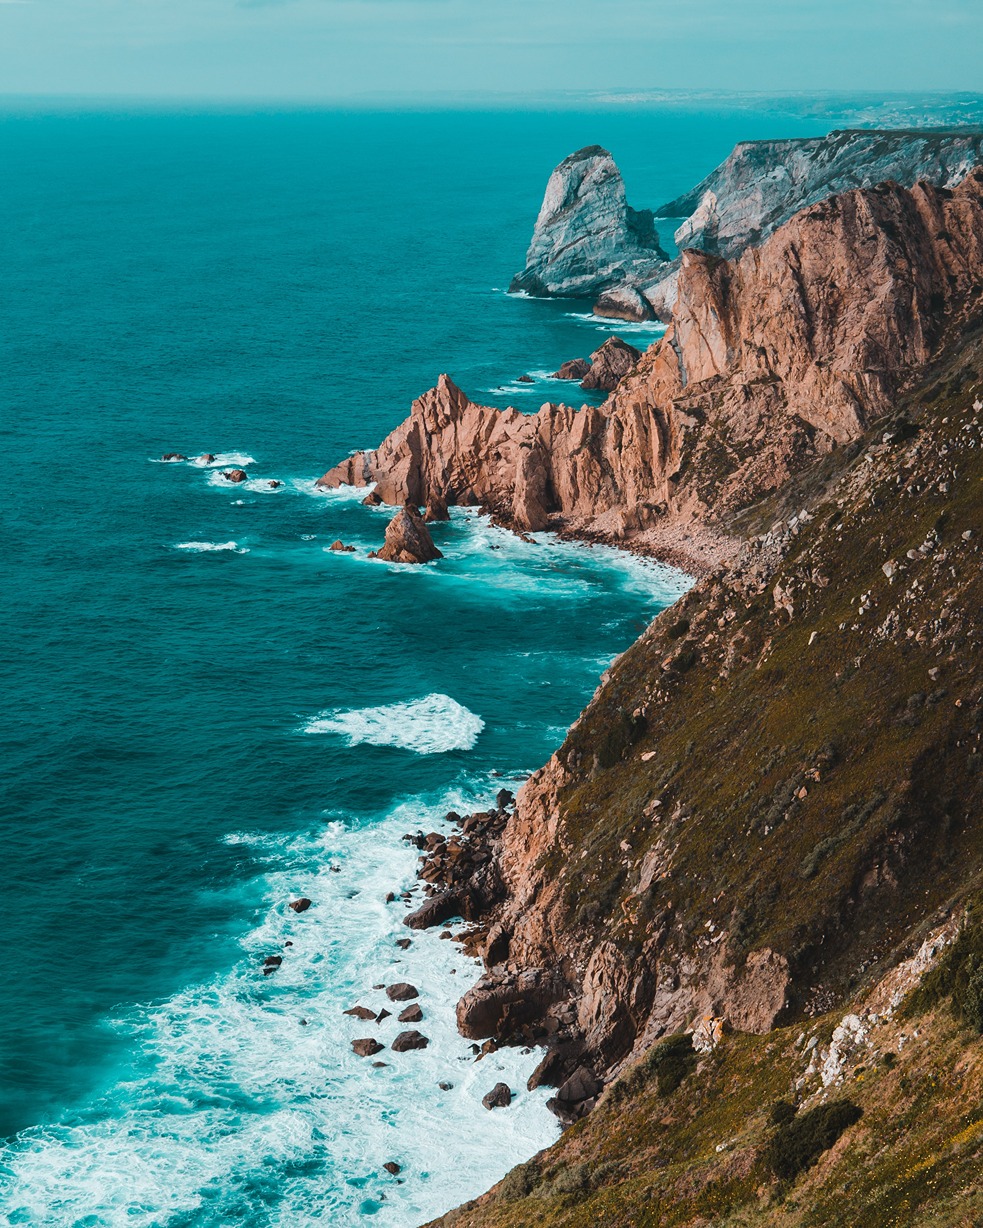 A coastal photo of Portugal